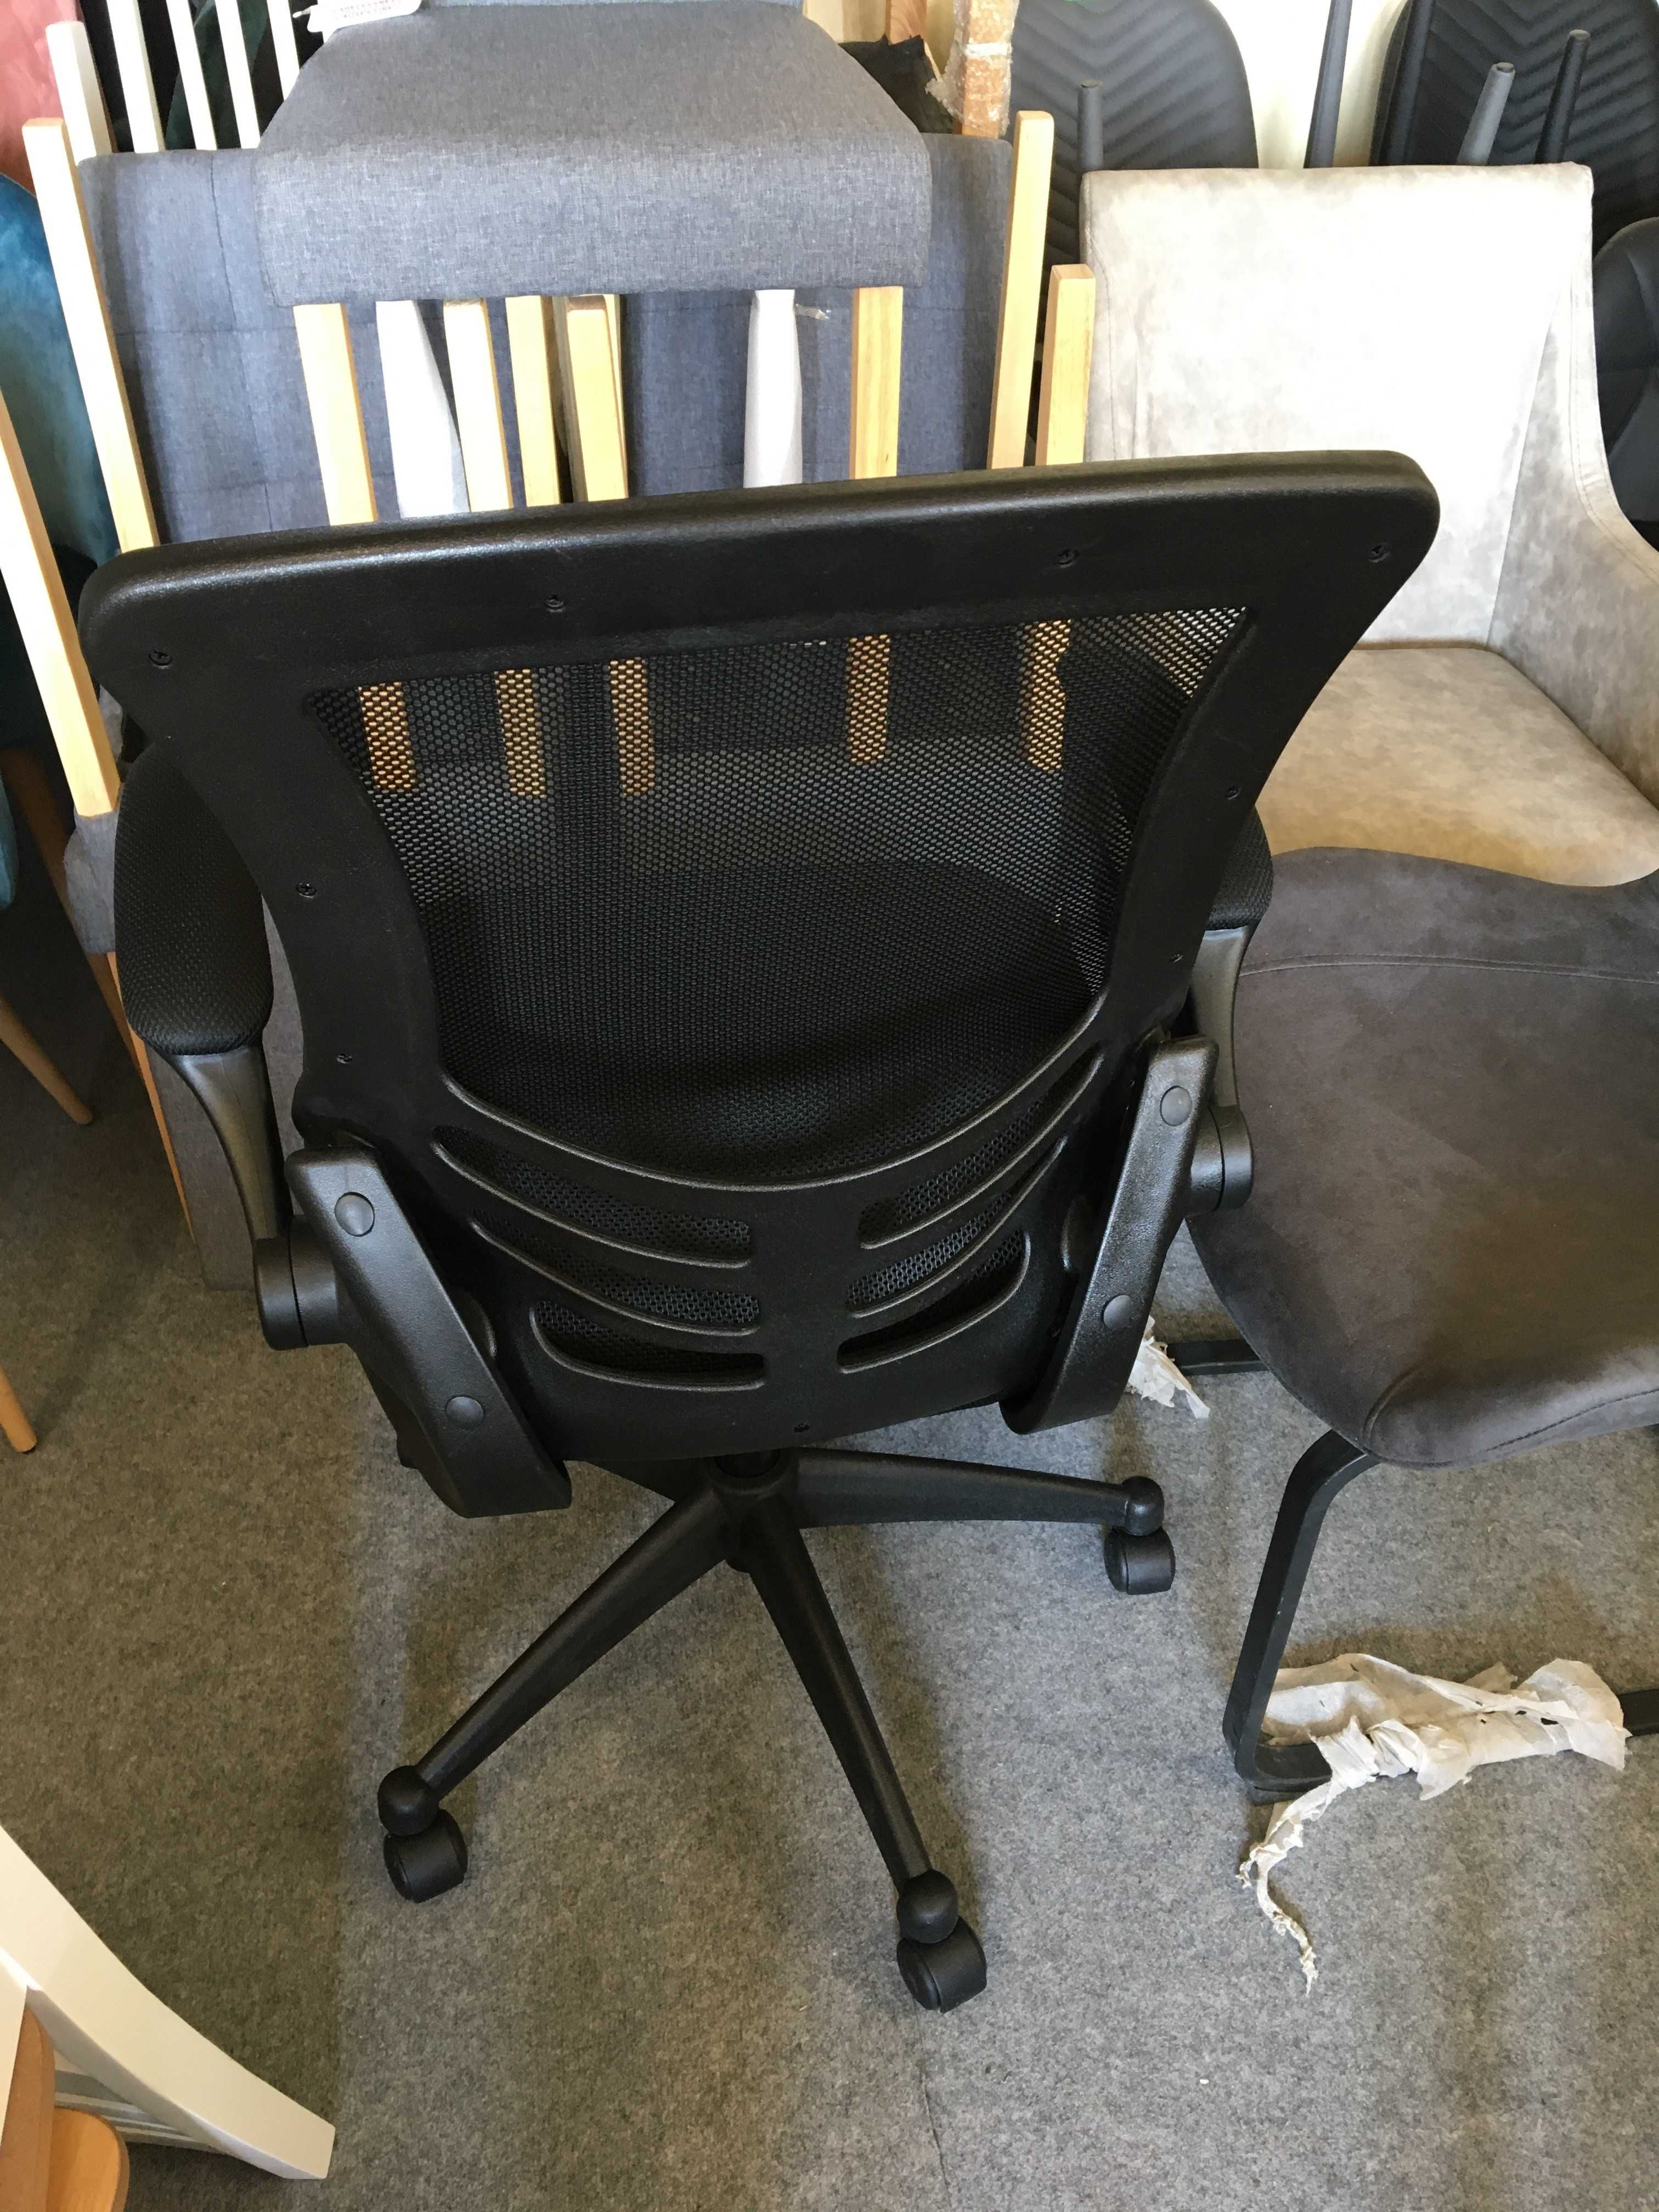 Czarne krzesło biurowe